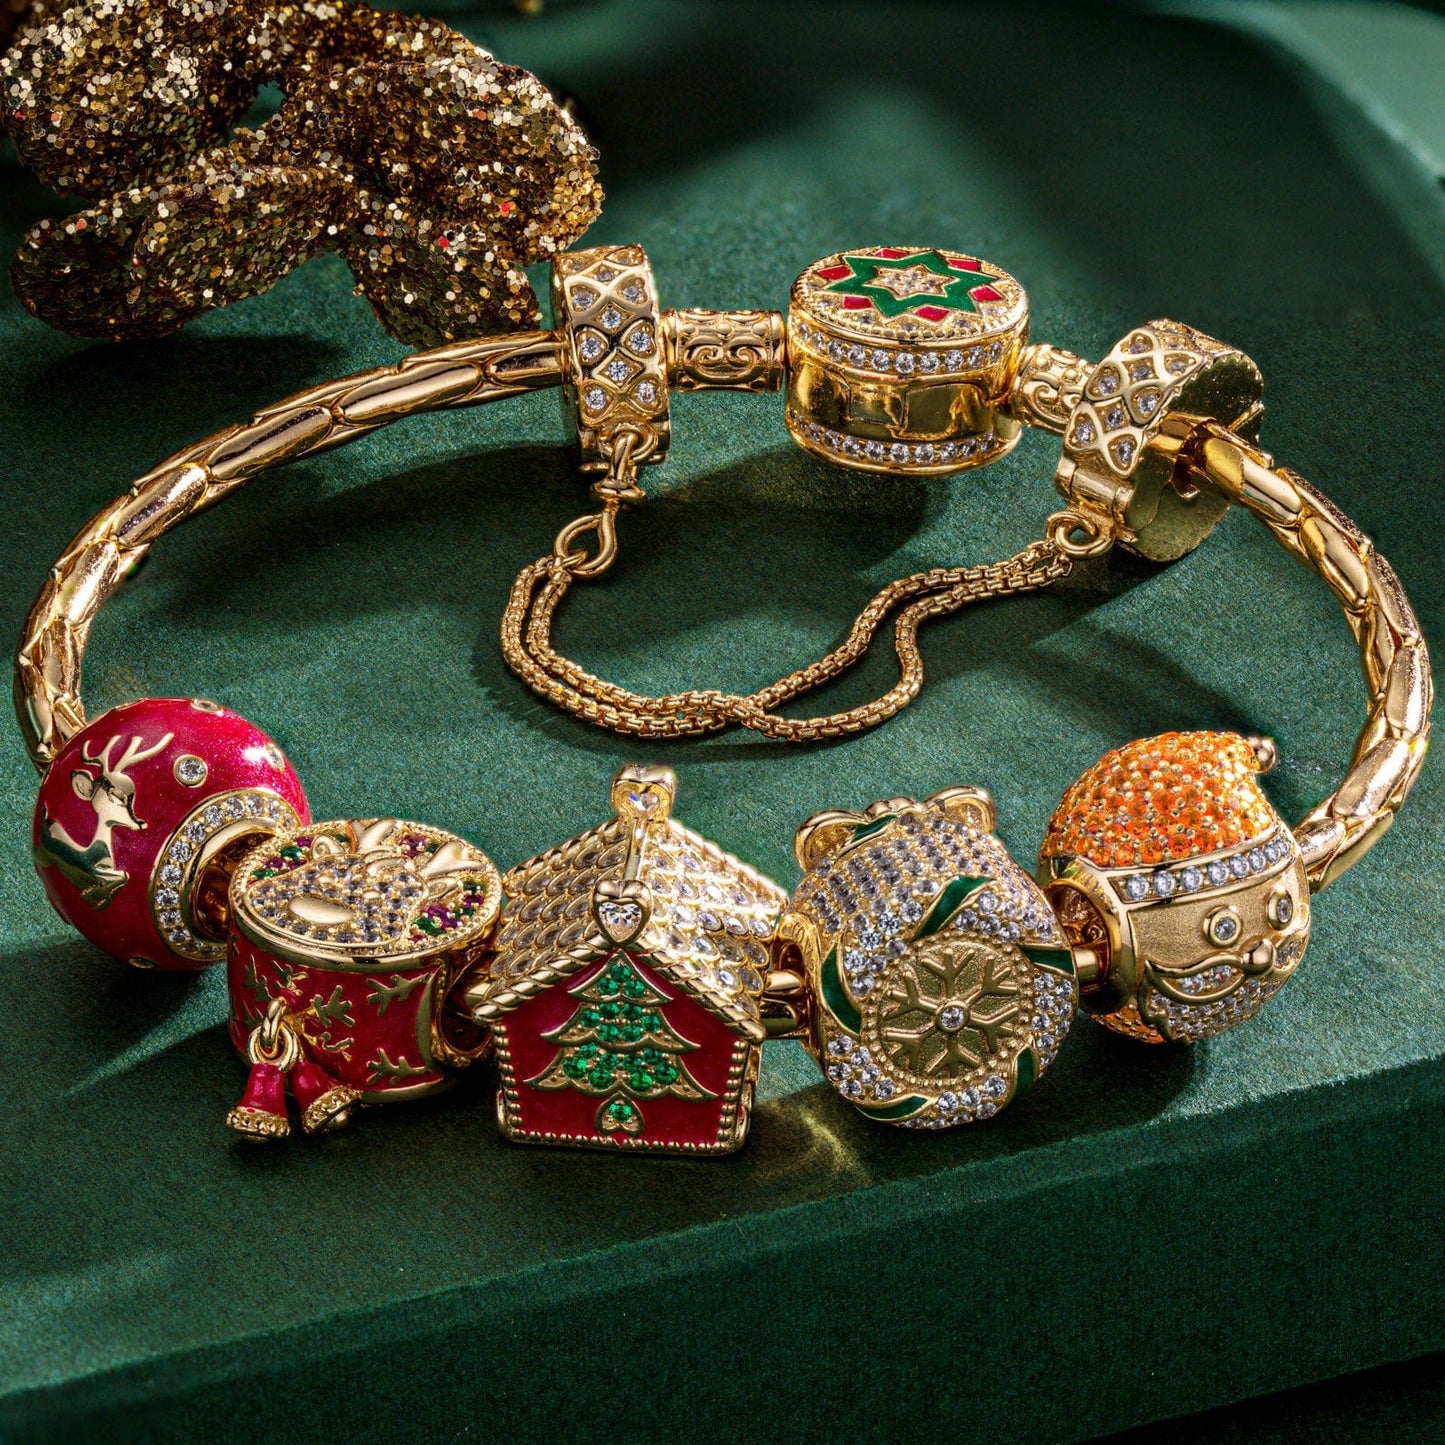 Sterling Silver Santa's Workshop Charms Bracelet Set With Enamel In 14K Gold Plated